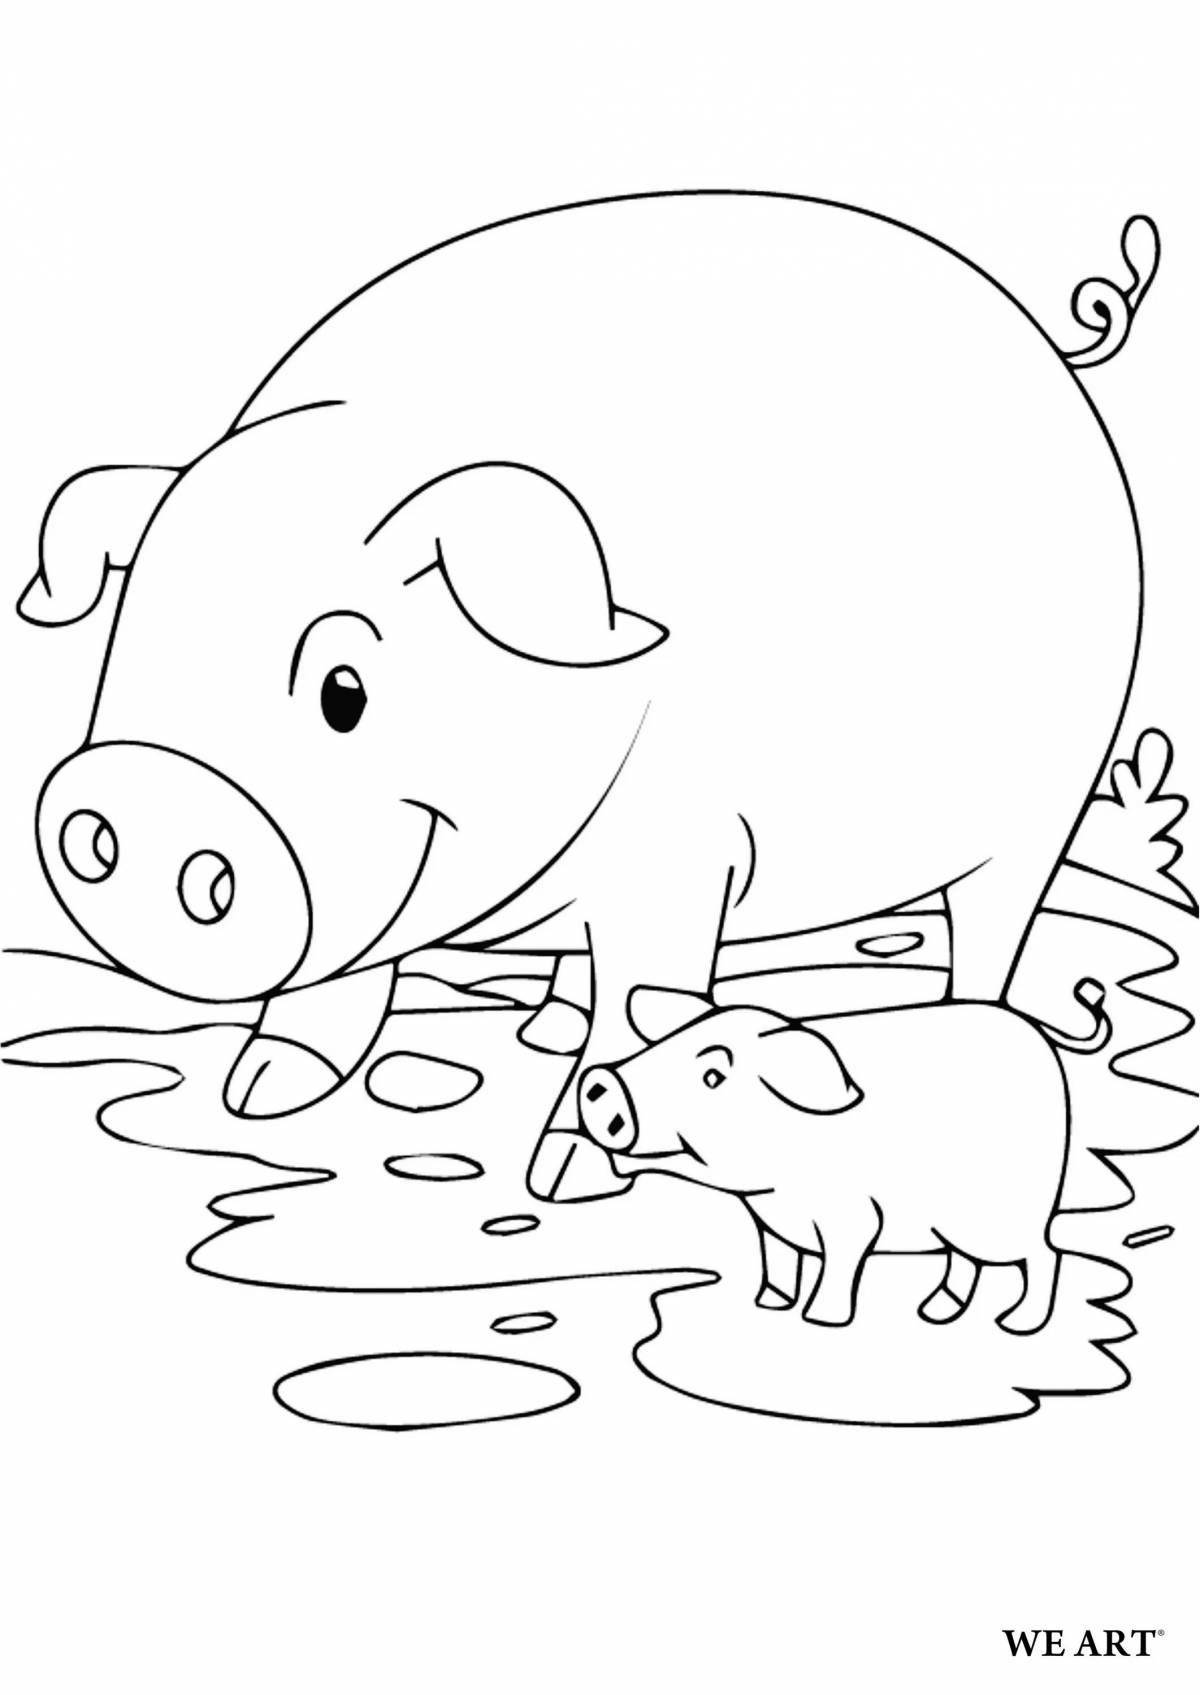 Экзотическая раскраска свинья для детей